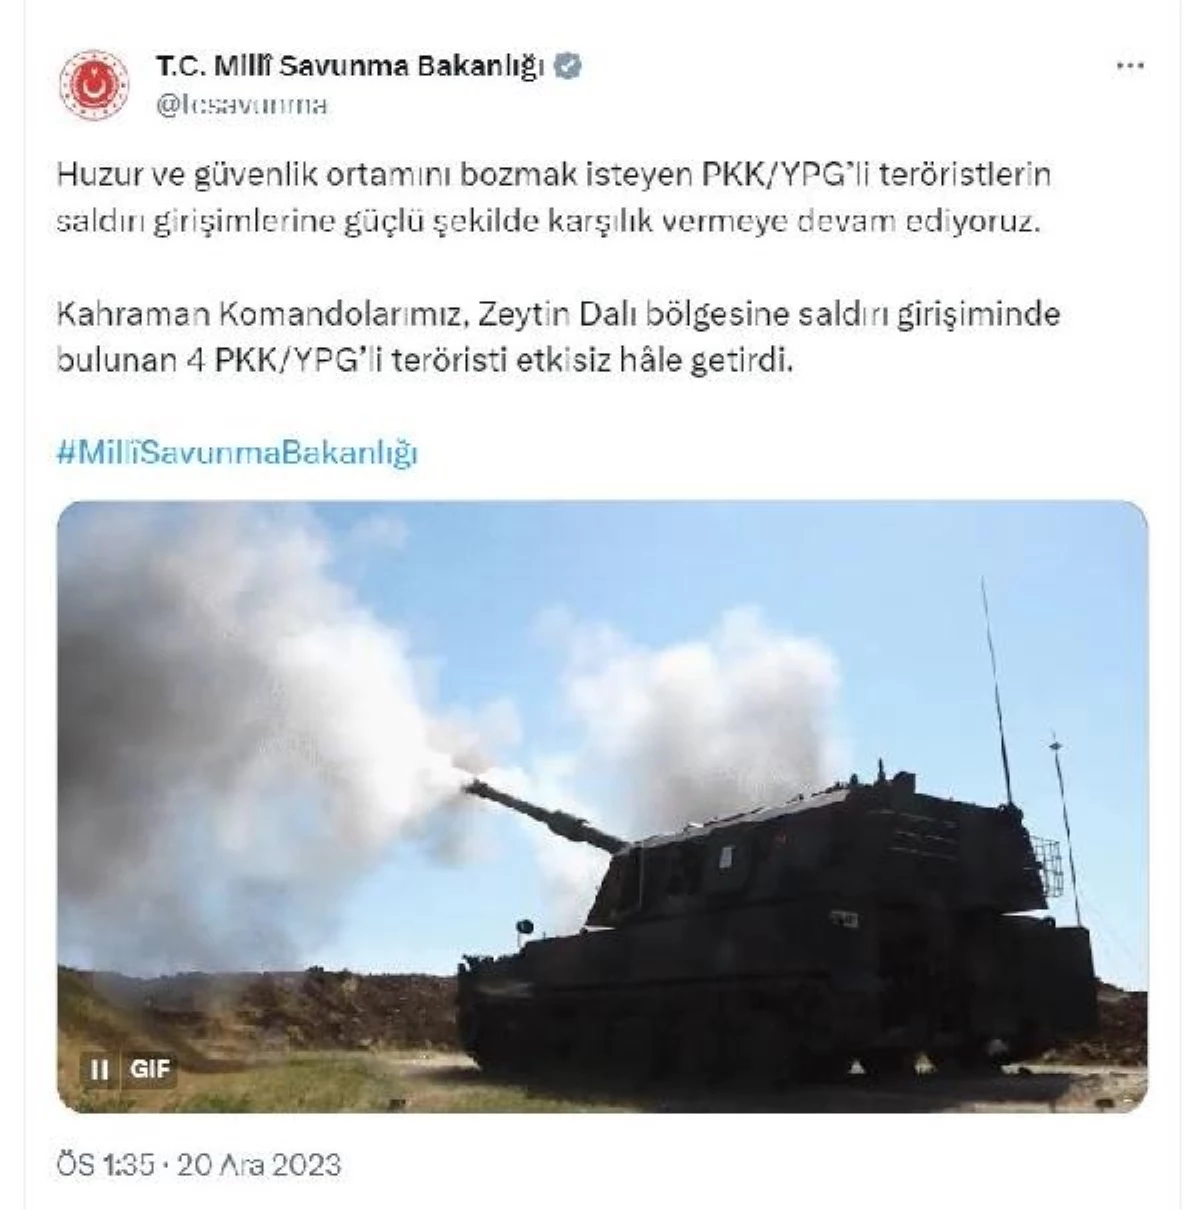 MSB: "Kahraman komandolarımız, Zeytin Dalı bölgesine saldırı girişiminde bulunan 4 PKK/YPG\'li teröristi etkisiz hâle getirdi."